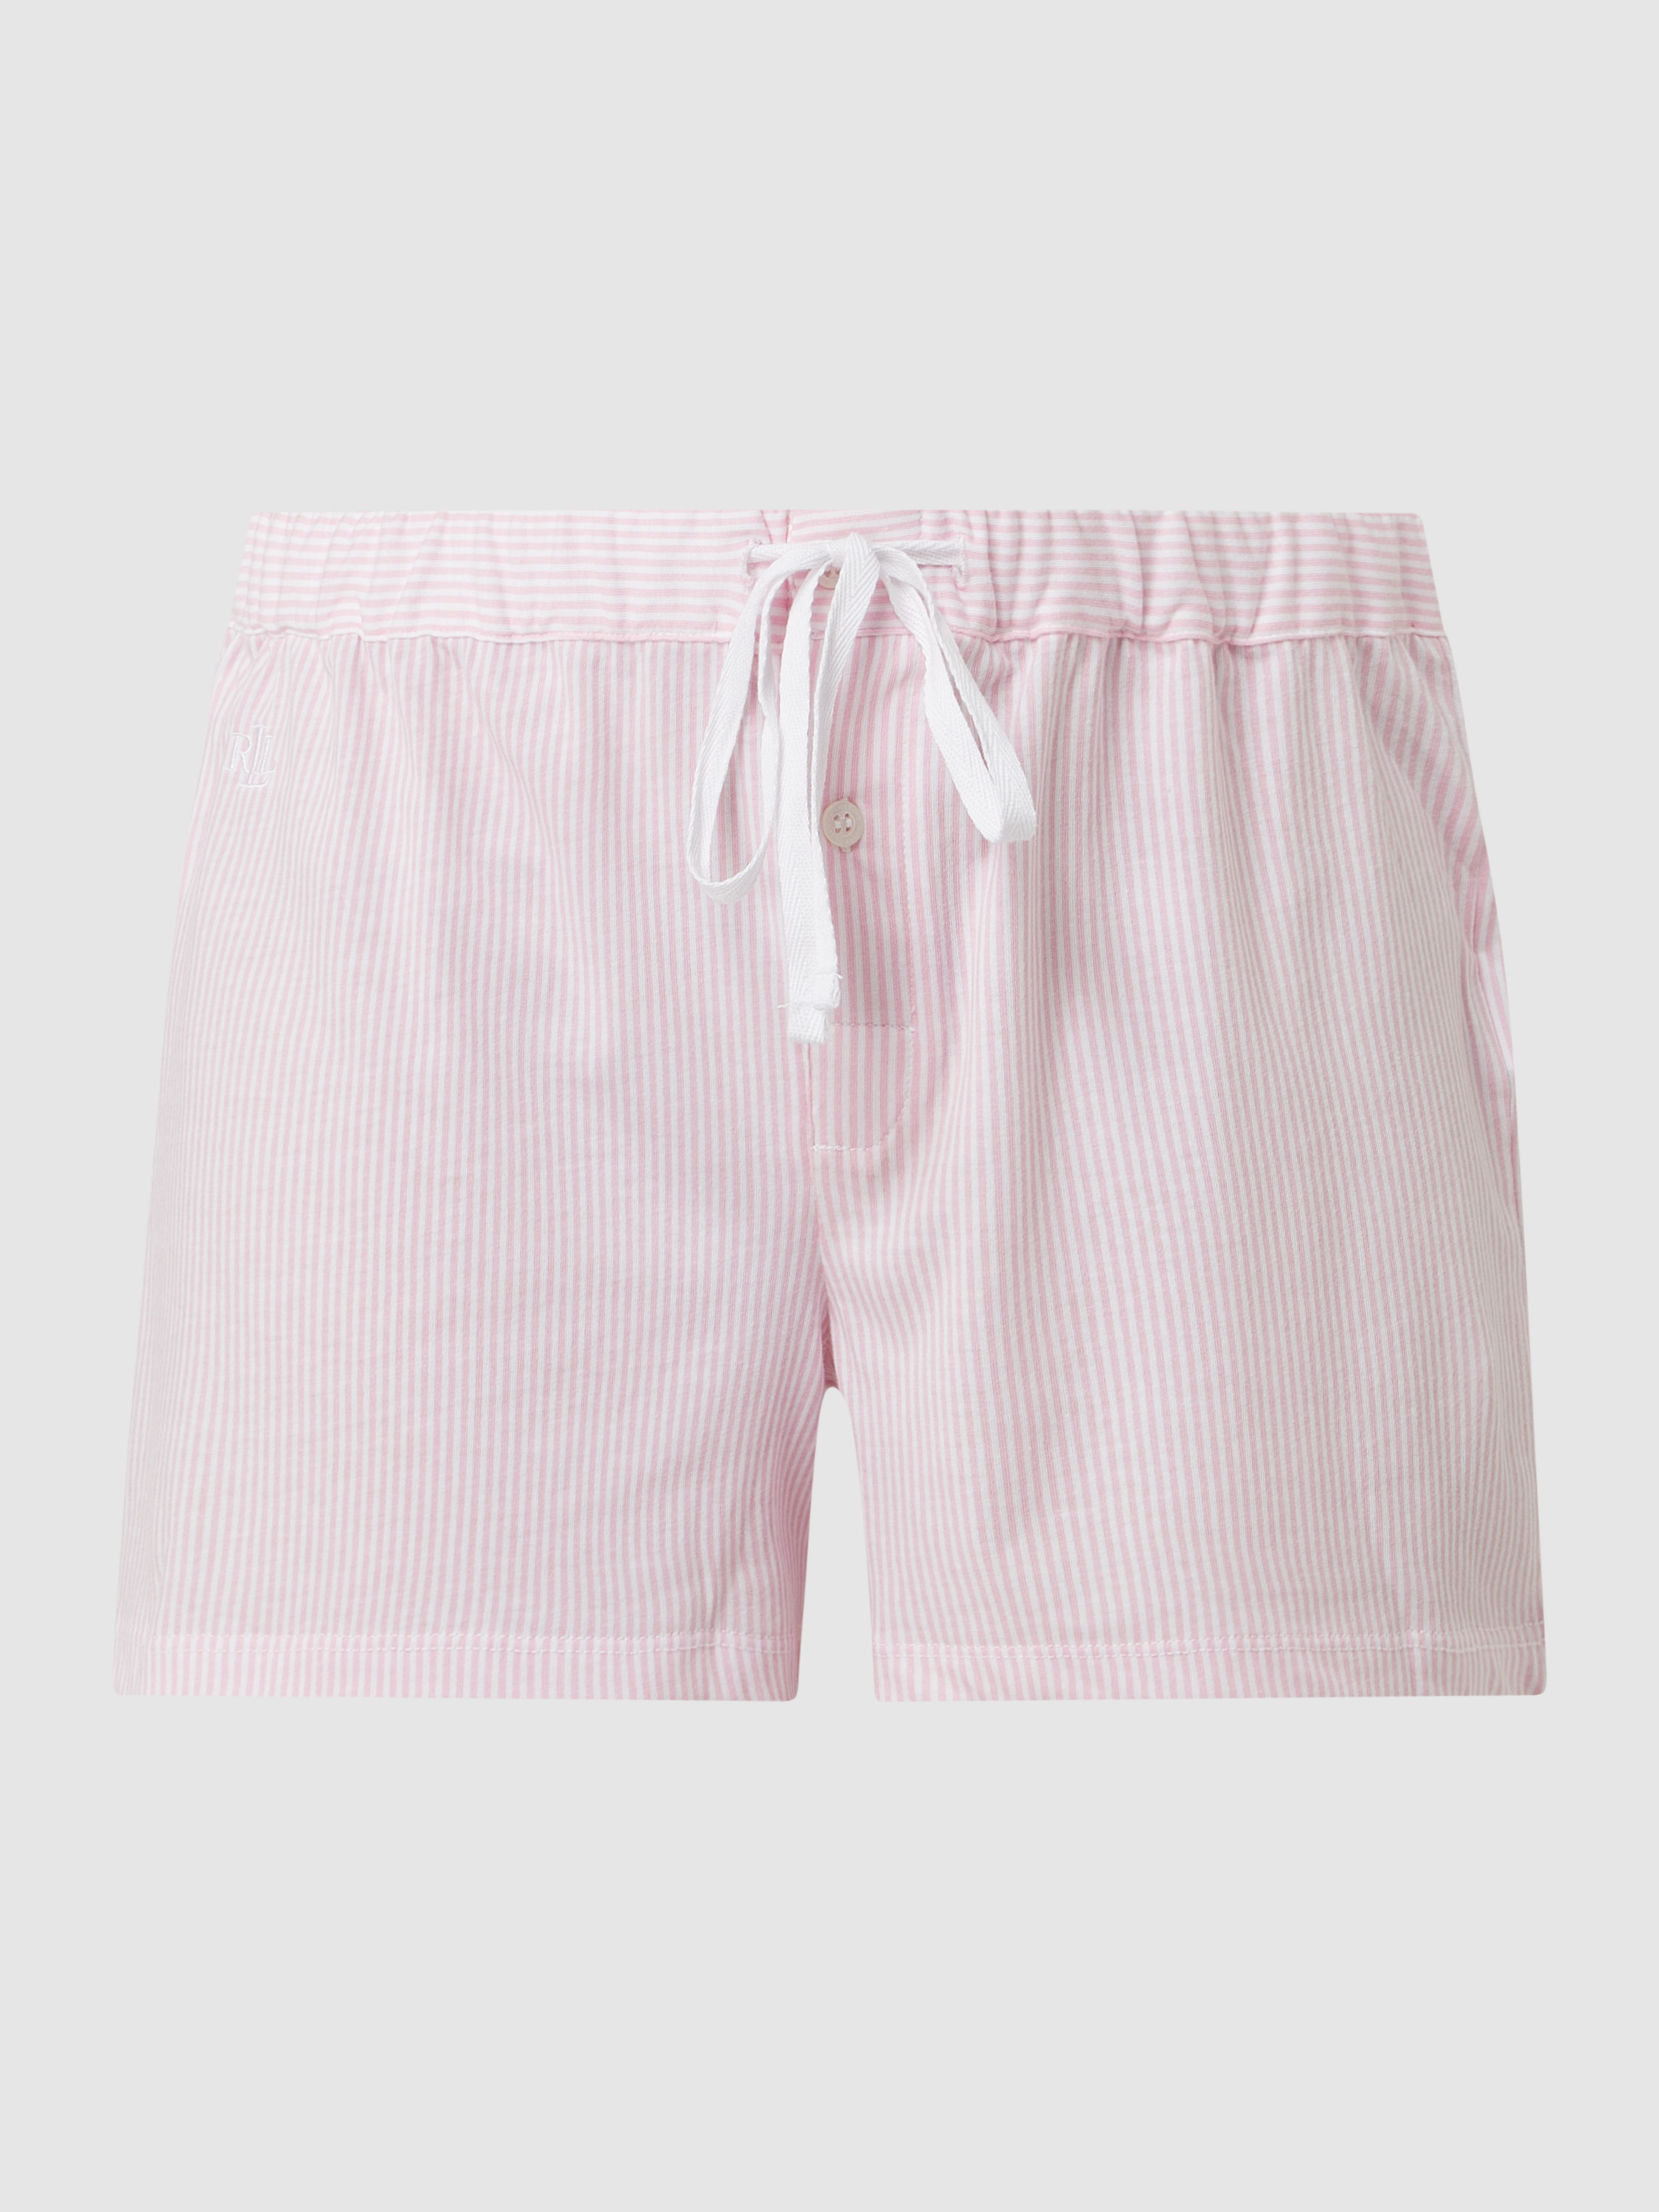 Шорты домашние женские Ralph Lauren 1120564 розовые XL (доставка из-за рубежа)